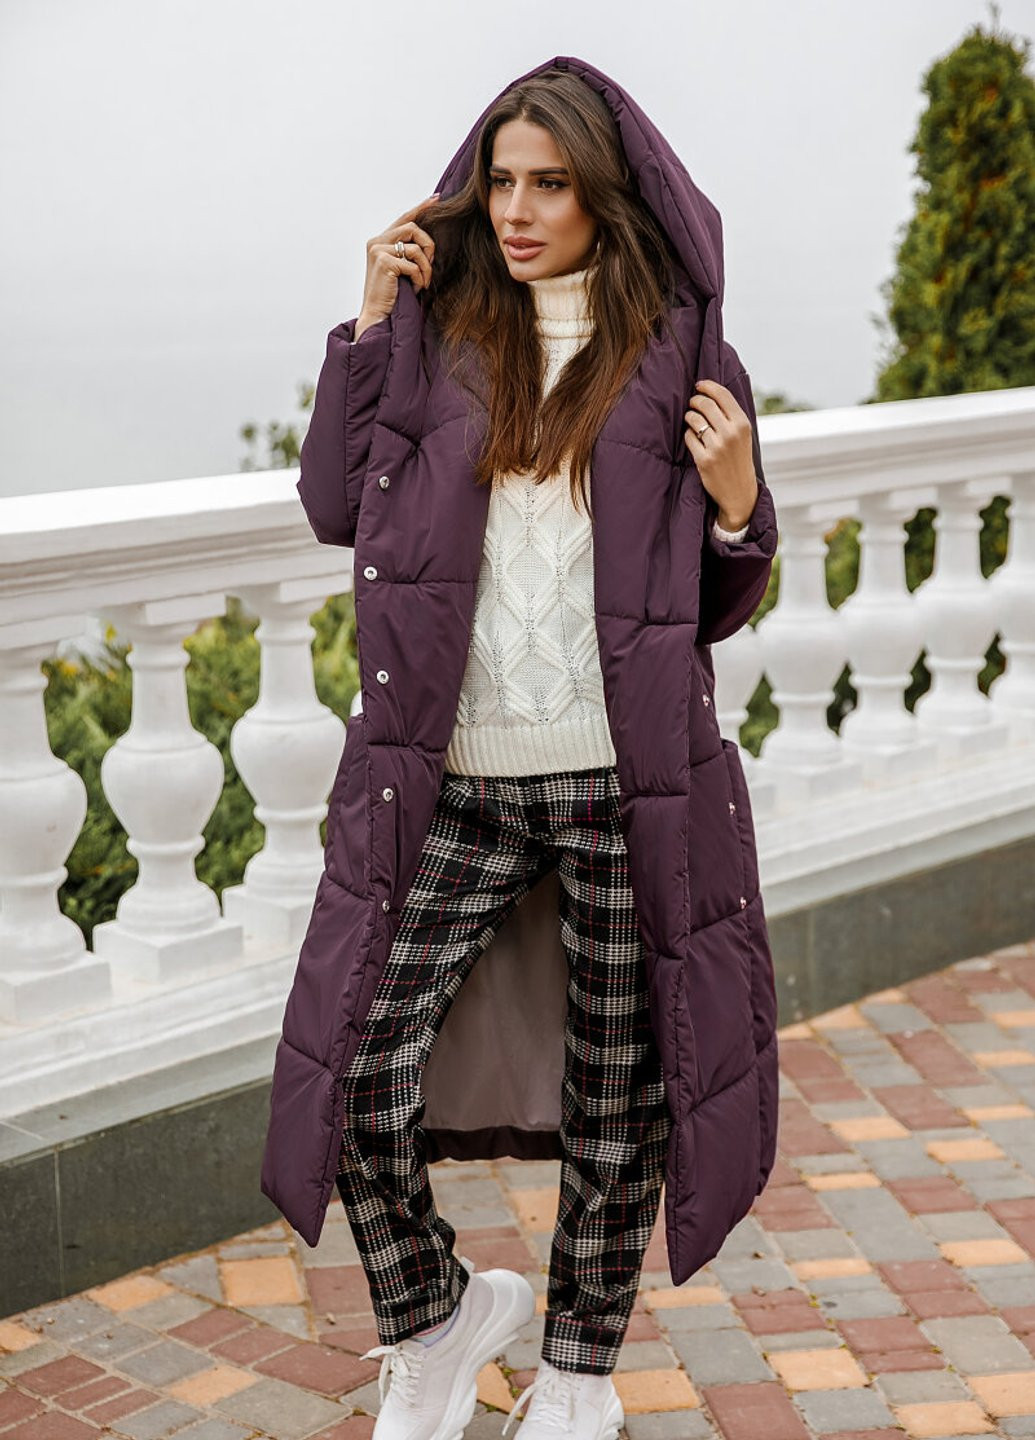 Фиолетовая зимняя удлиненная теплая куртка Gepur